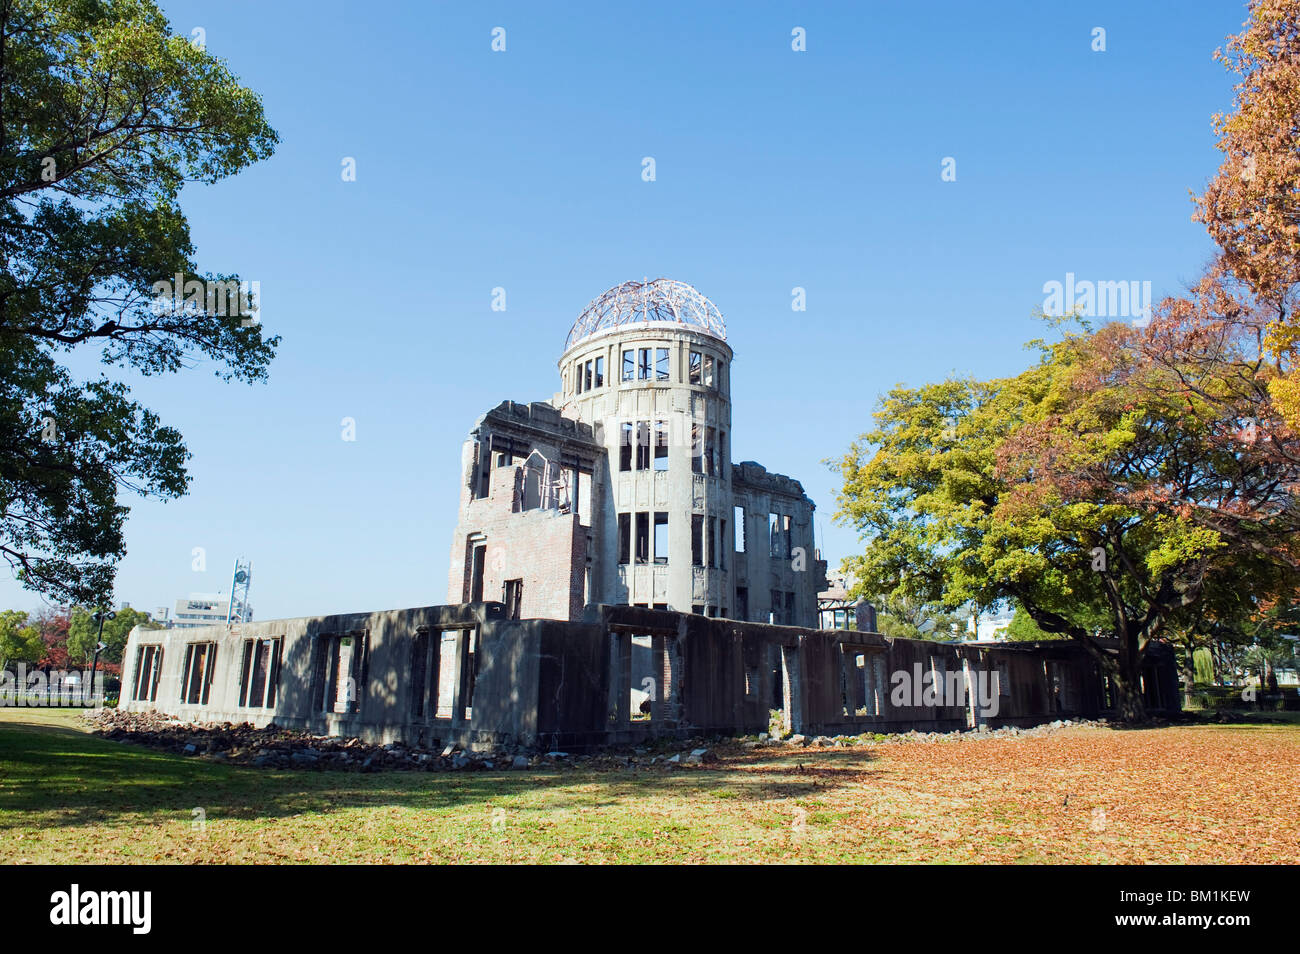 La Cupola della Bomba Atomica, Hiroshima, Sito Patrimonio Mondiale dell'UNESCO, Prefettura di Hiroshima, Giappone, Asia Foto Stock